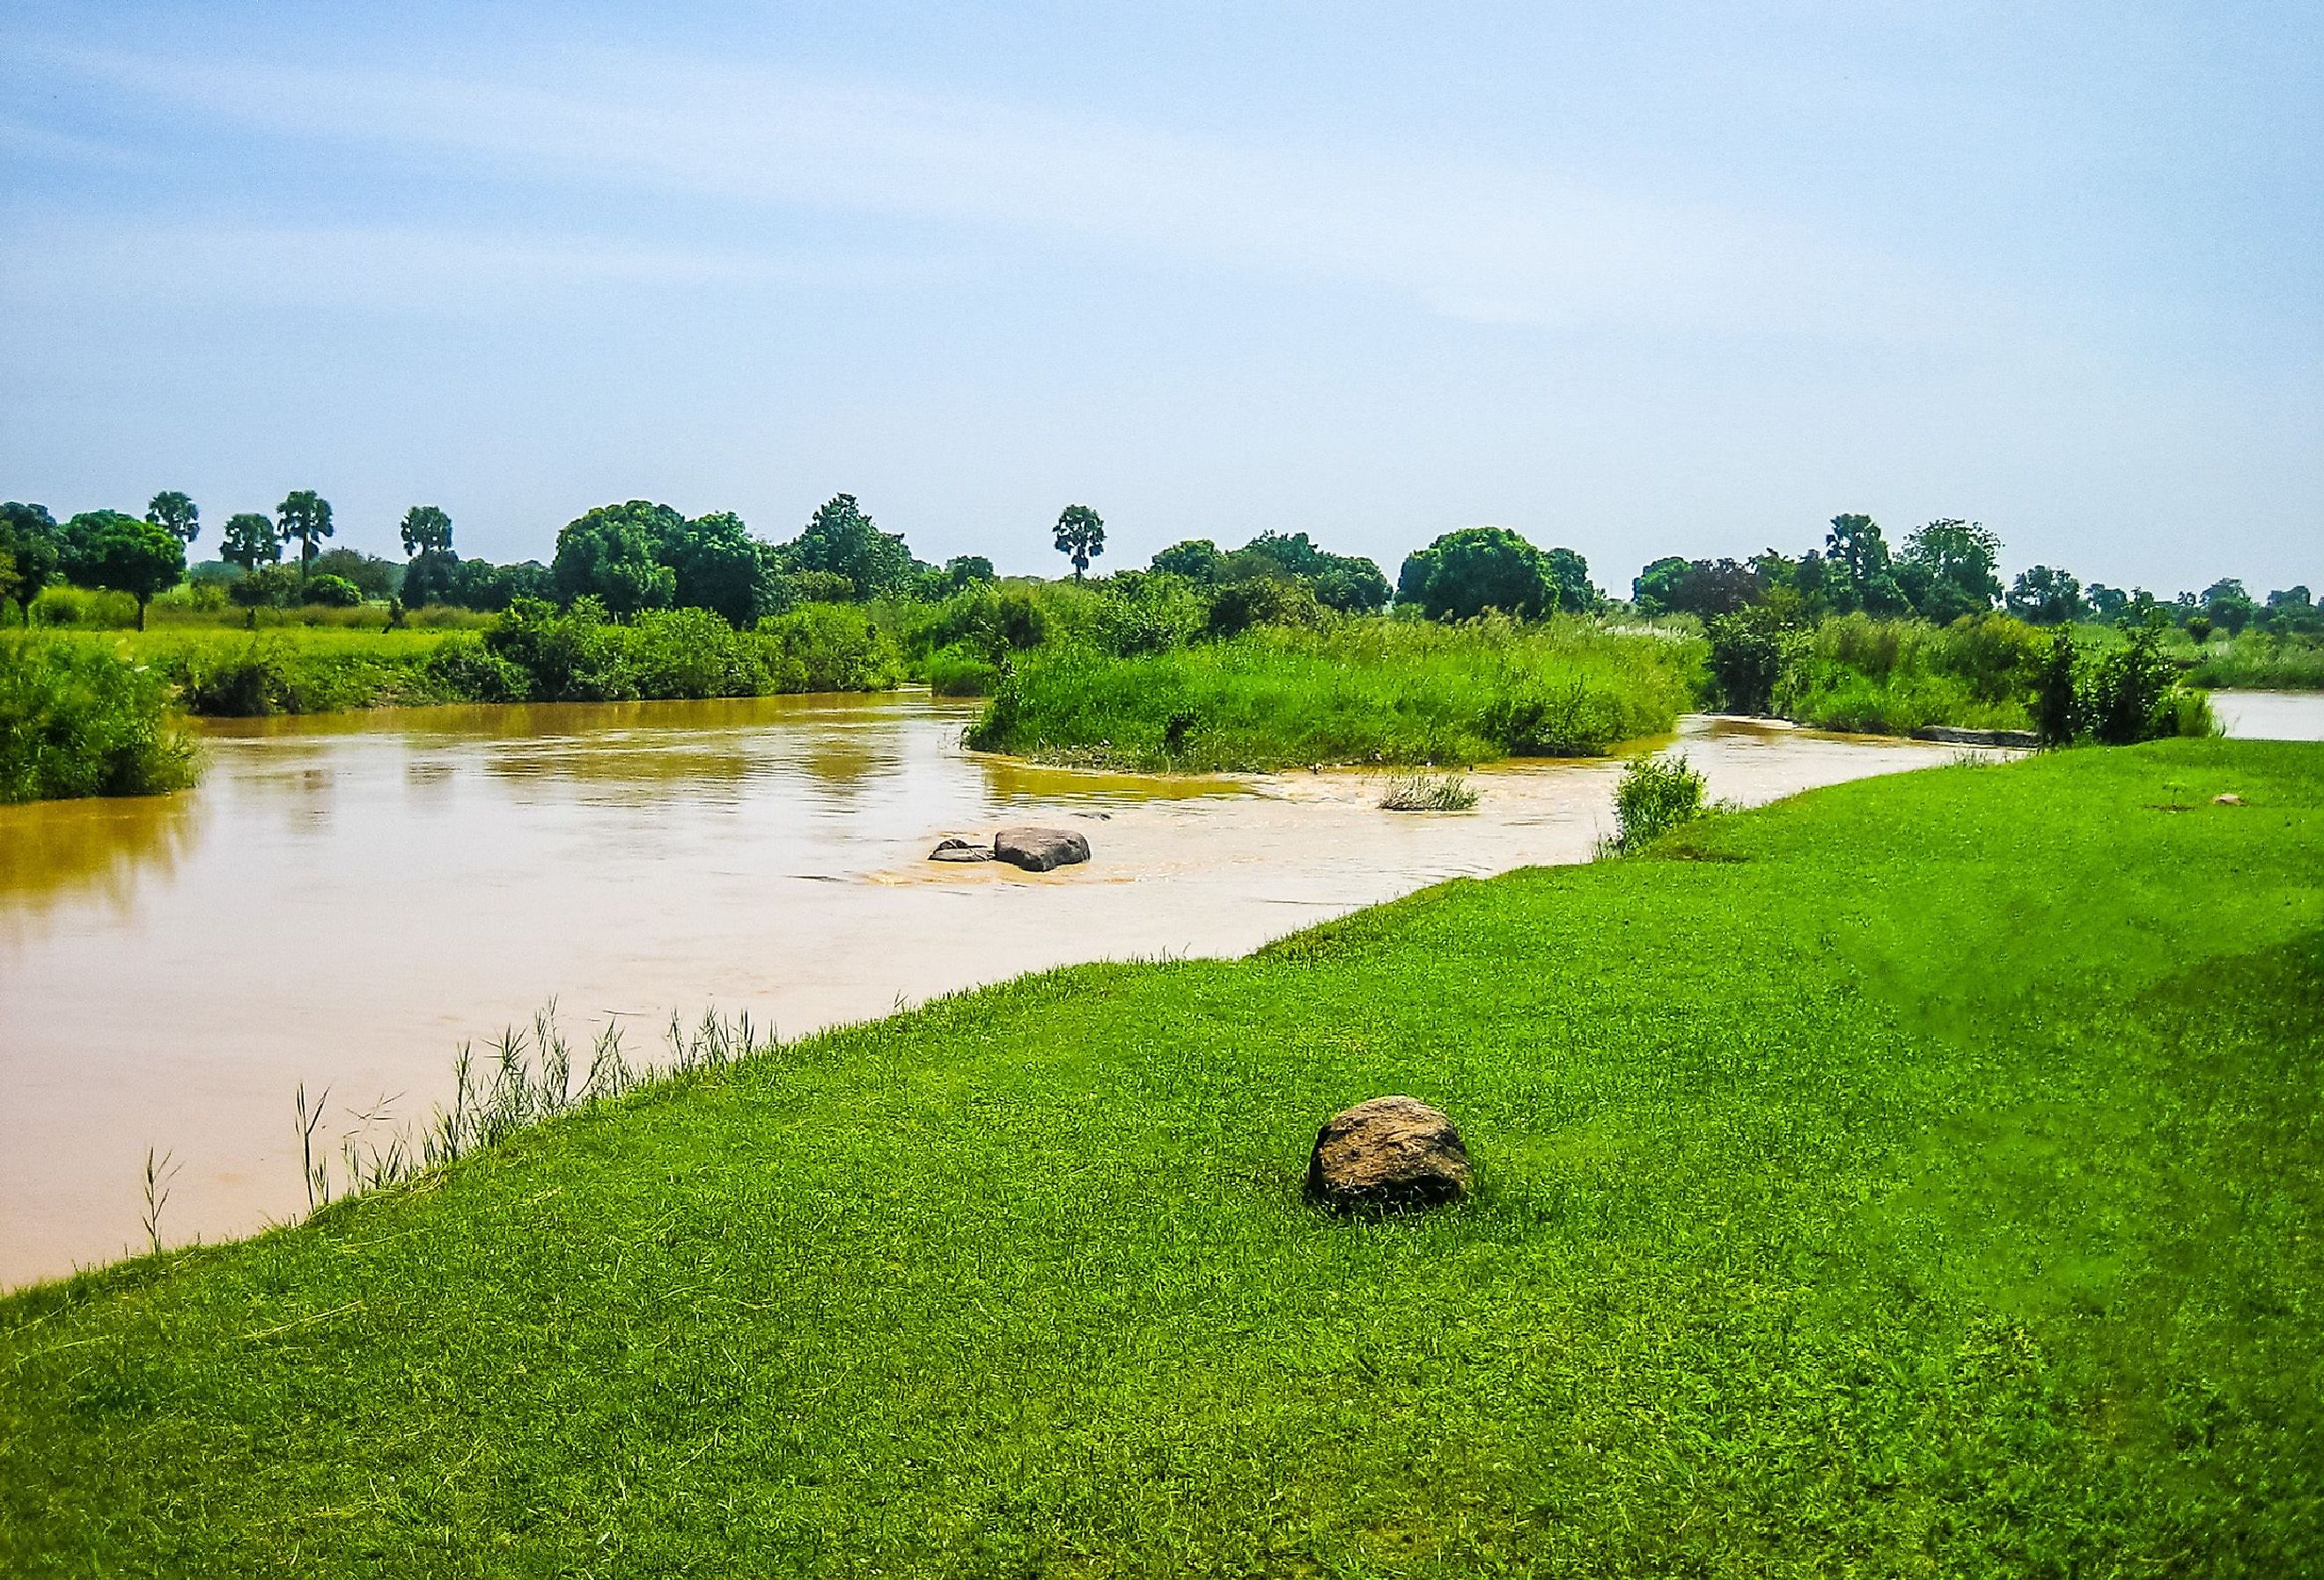 Kaduna River in Kaduna, Nigeria.